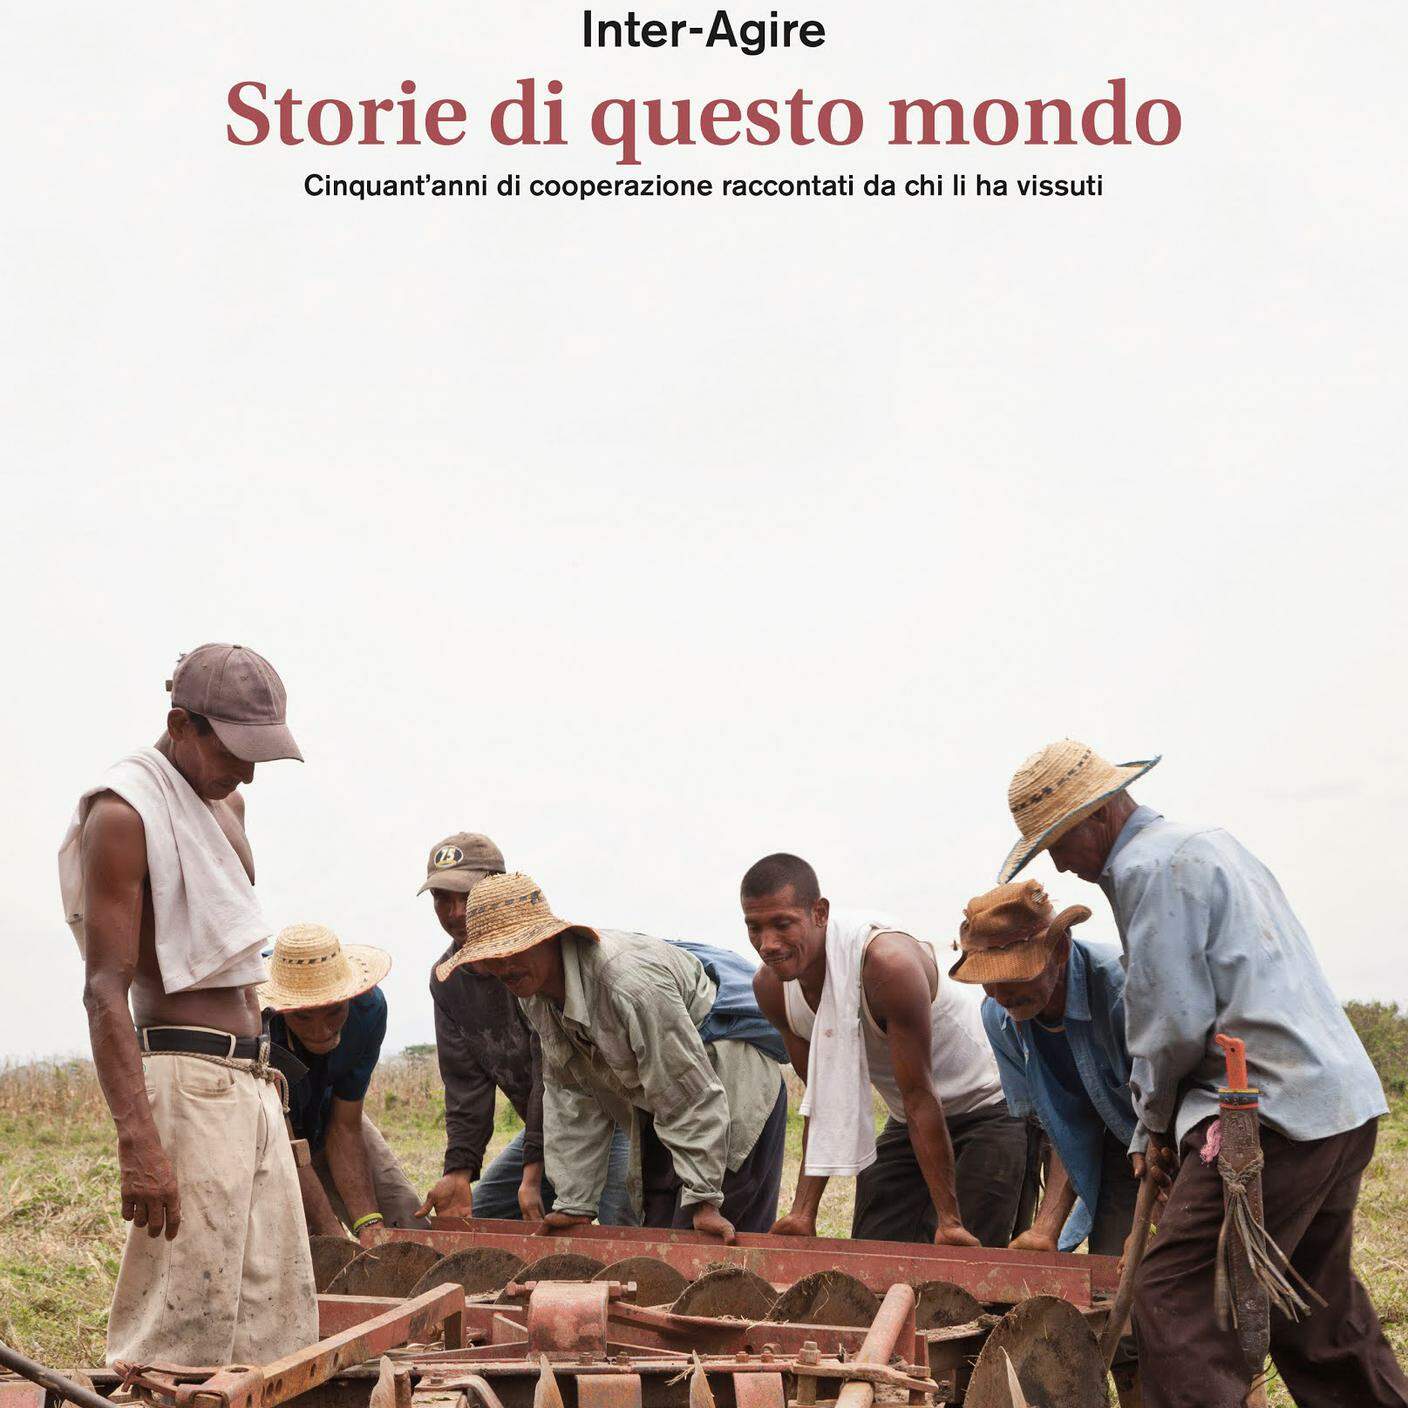 "Storie di questo mondo. 50 anni di cooperazione raccontati da chi li ha vissuti" di Sara Rossi Guidicelli; Inter-Agire (dettaglio copertina)